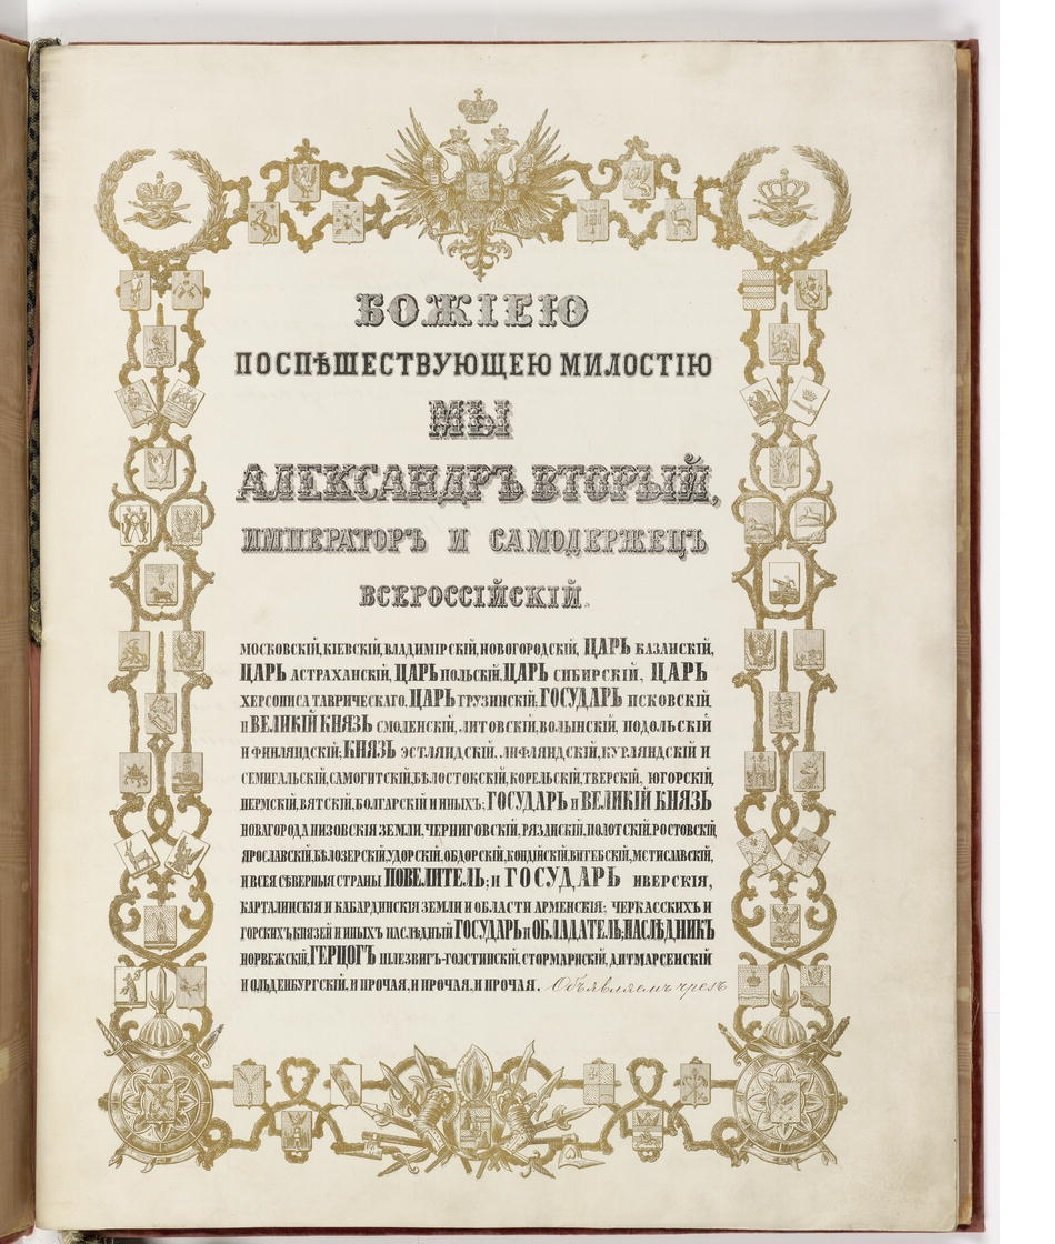 Tsar Alexander II treaty